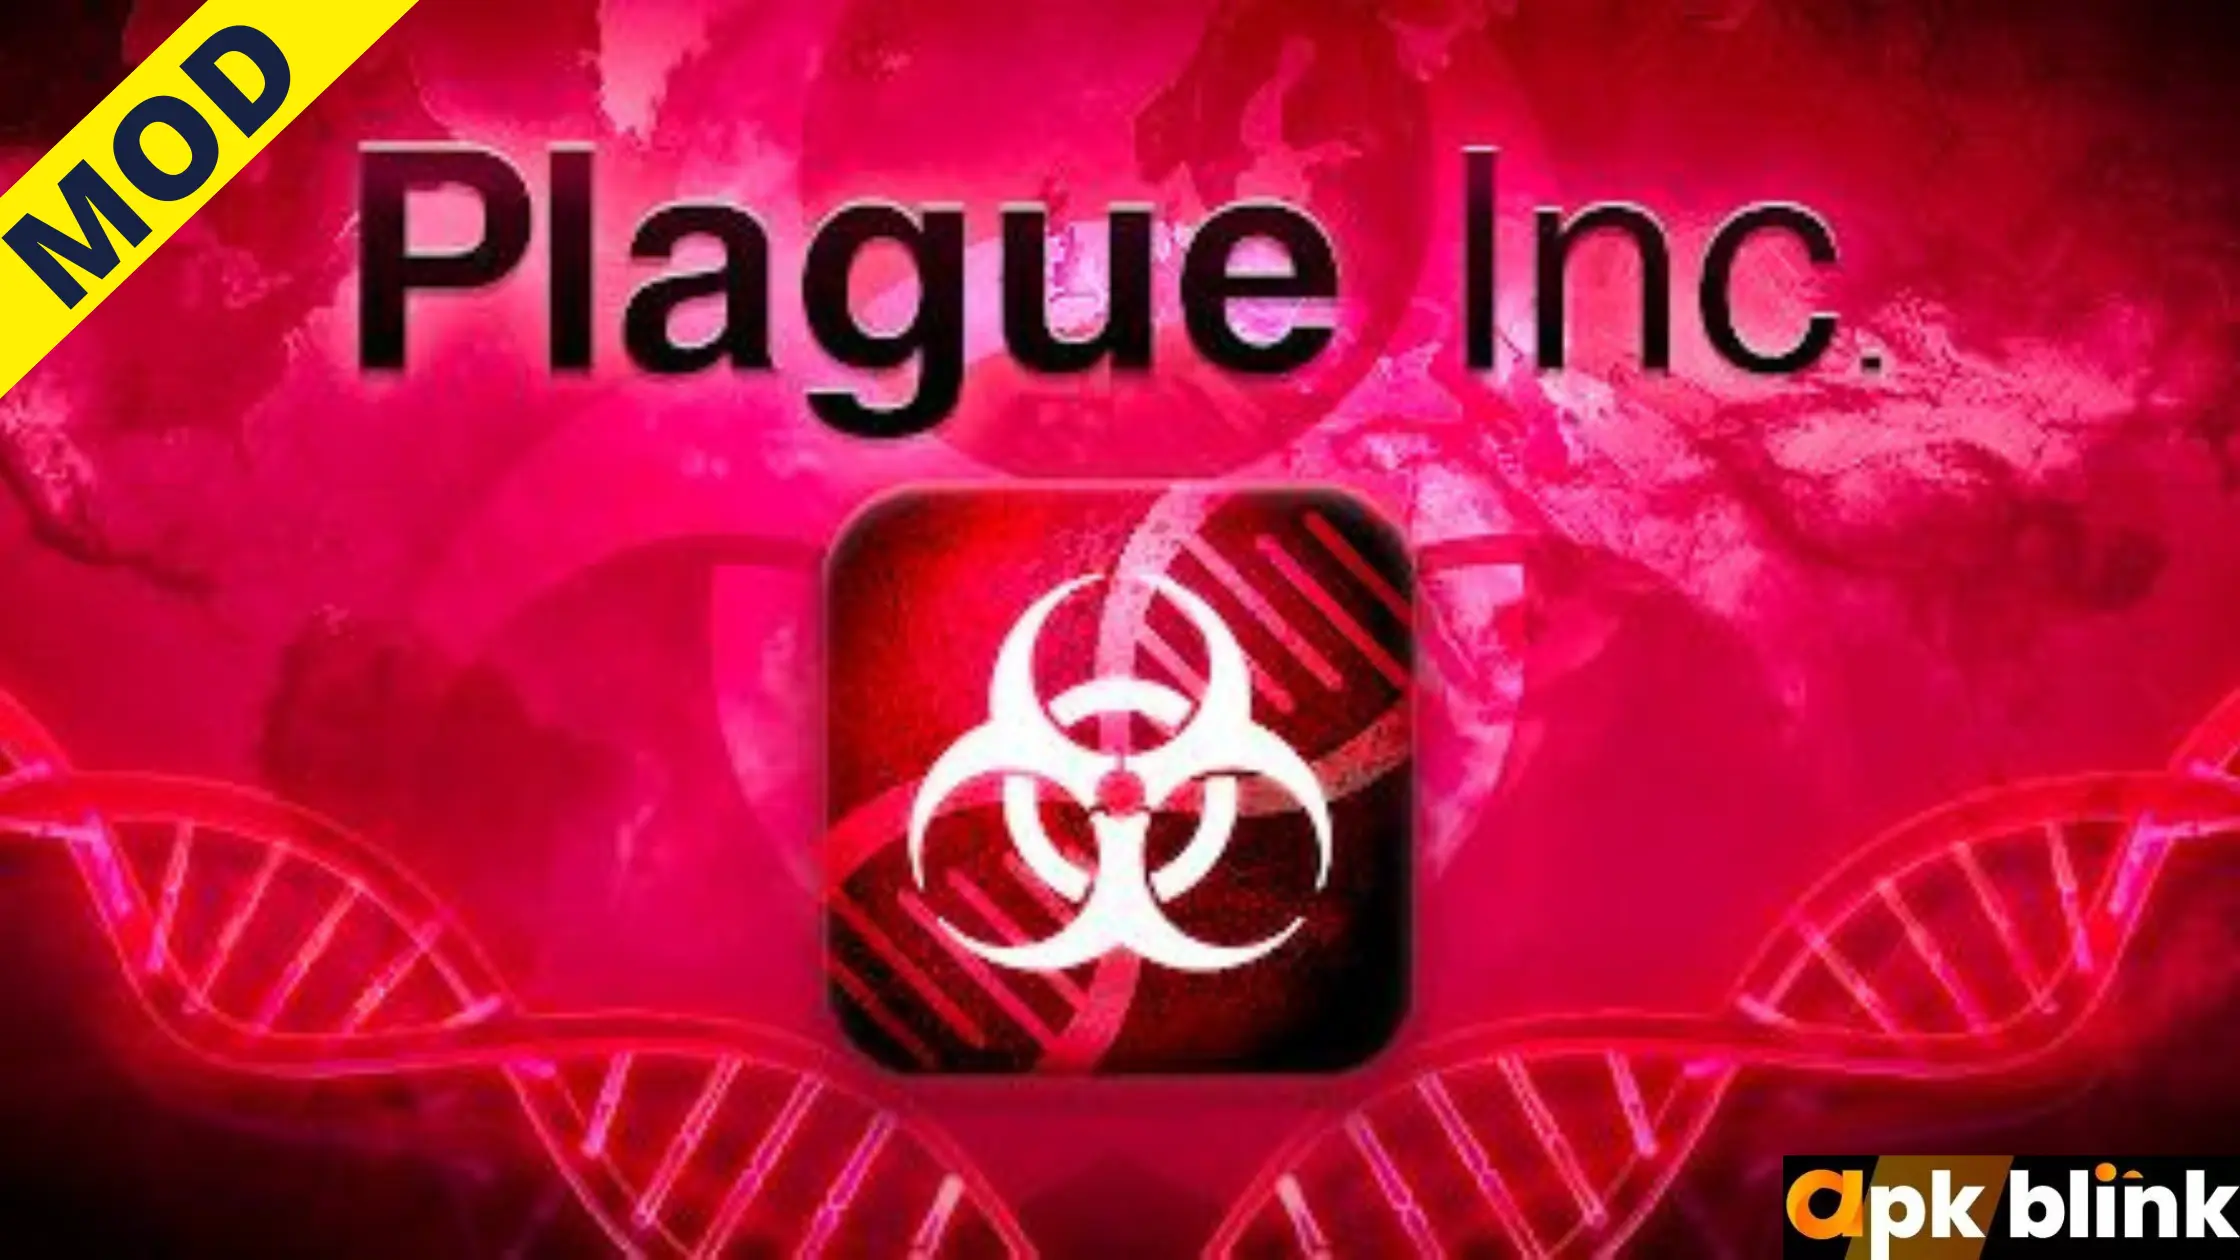 Plague Inc Mod APK
